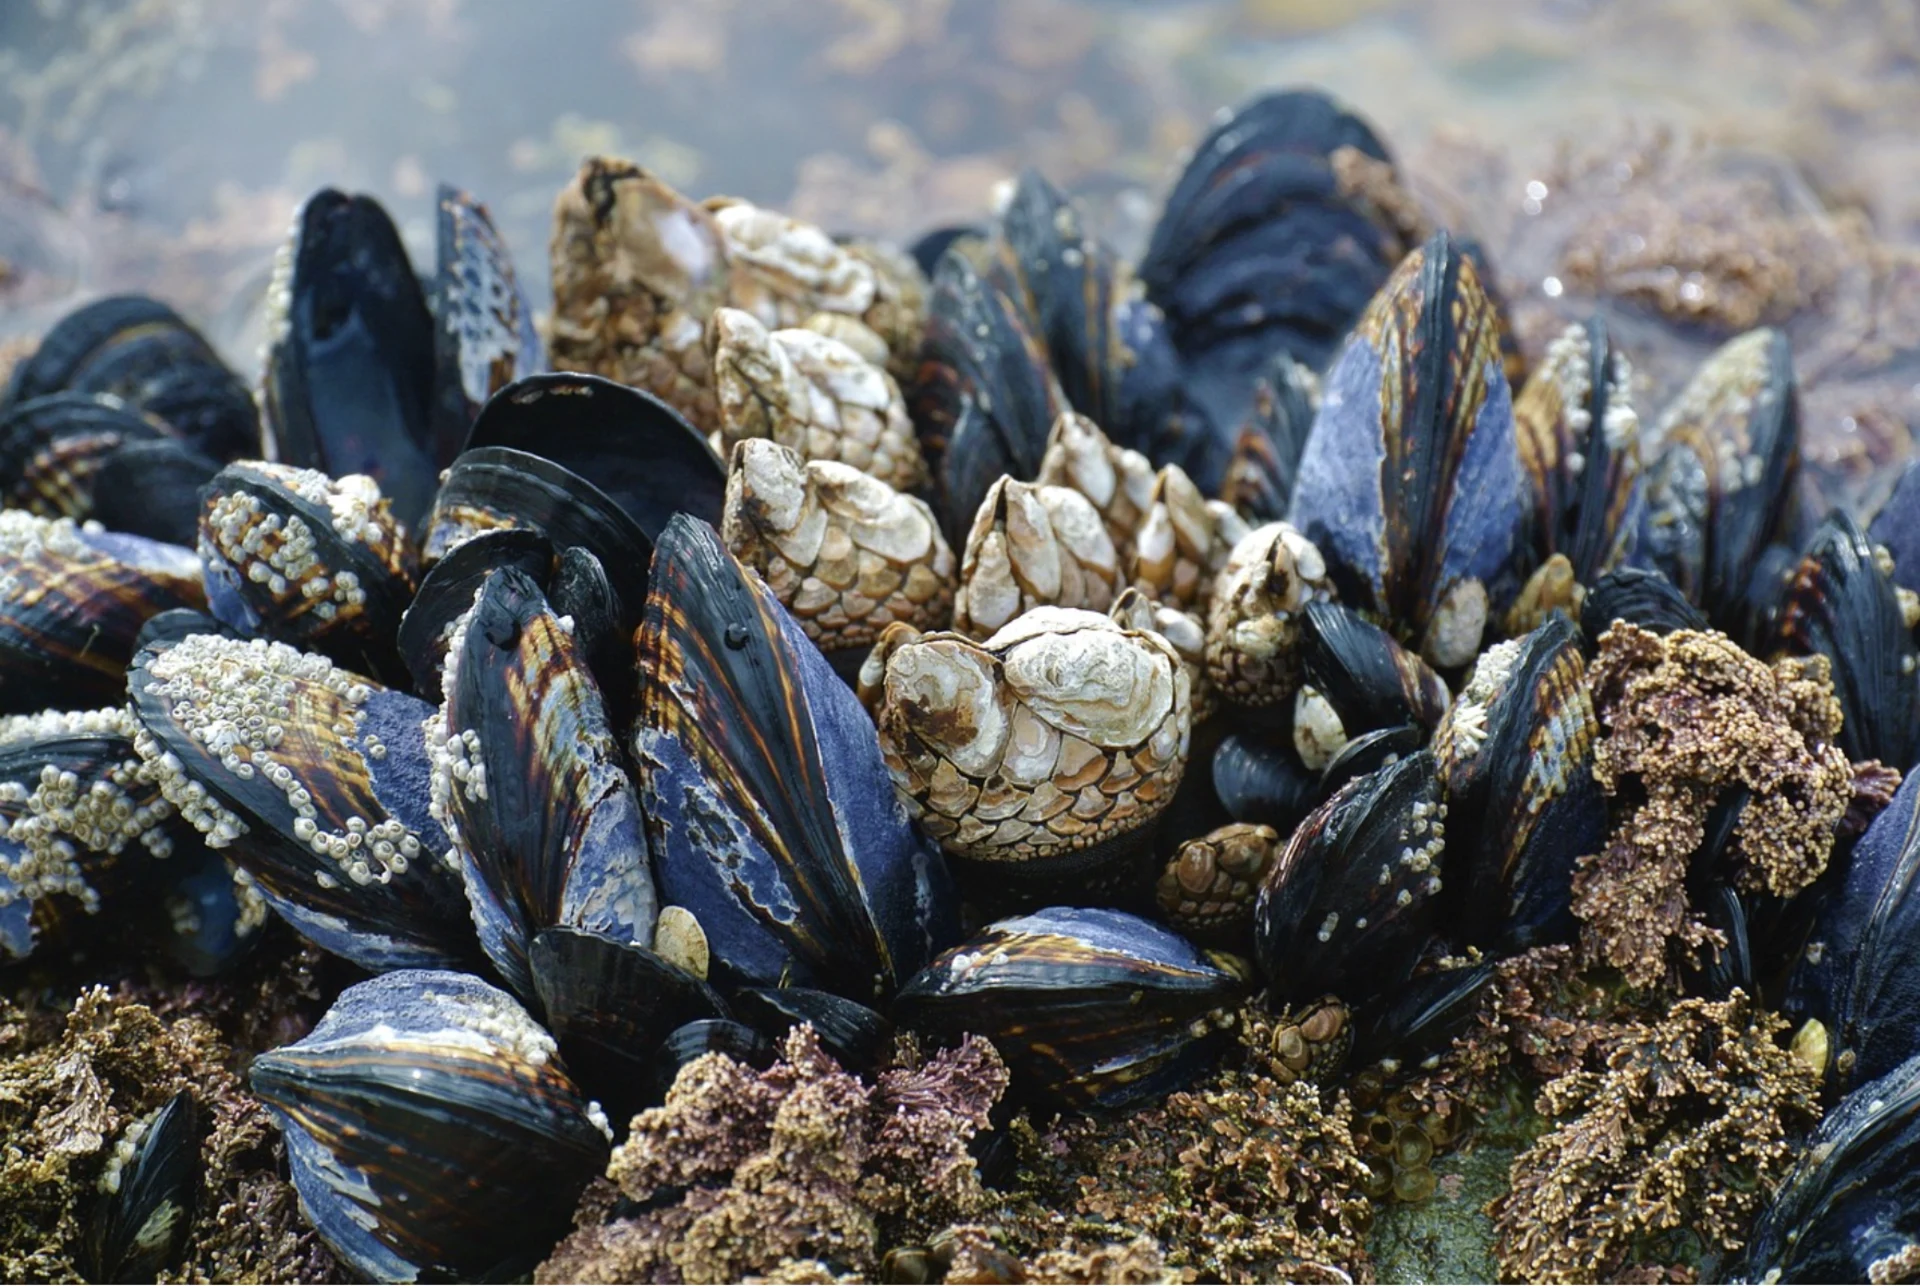 'Razor-sharp shells': Invasive mussels are threatening Okanagan's waterways